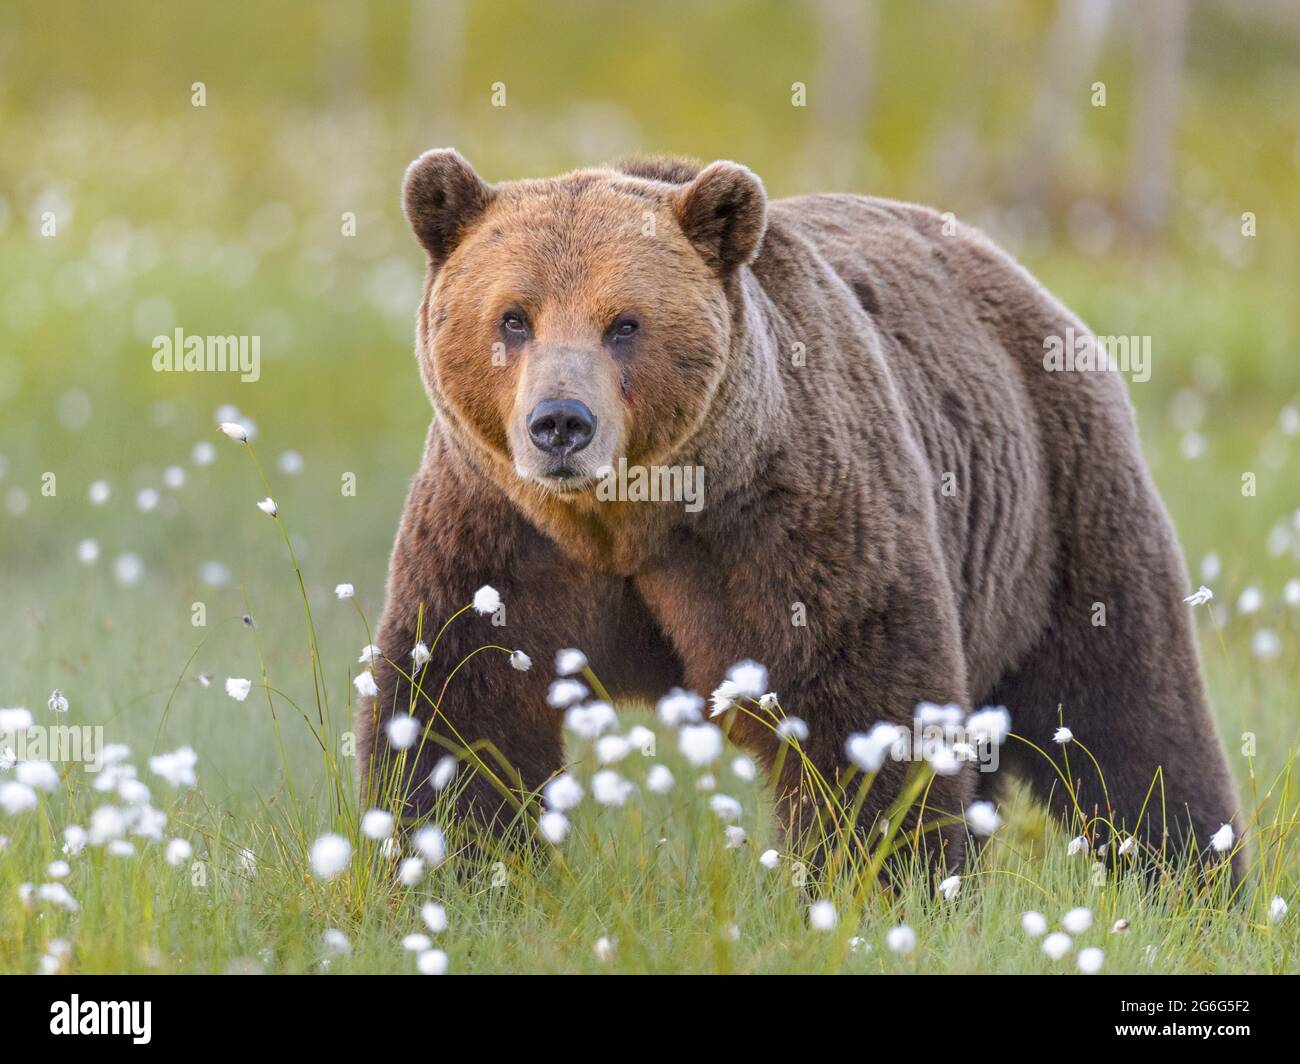 European brown bear (Ursus arctos arctos), standing in a blooming meadow, looking toward camera, Finland, Suomussalmi Stock Photo